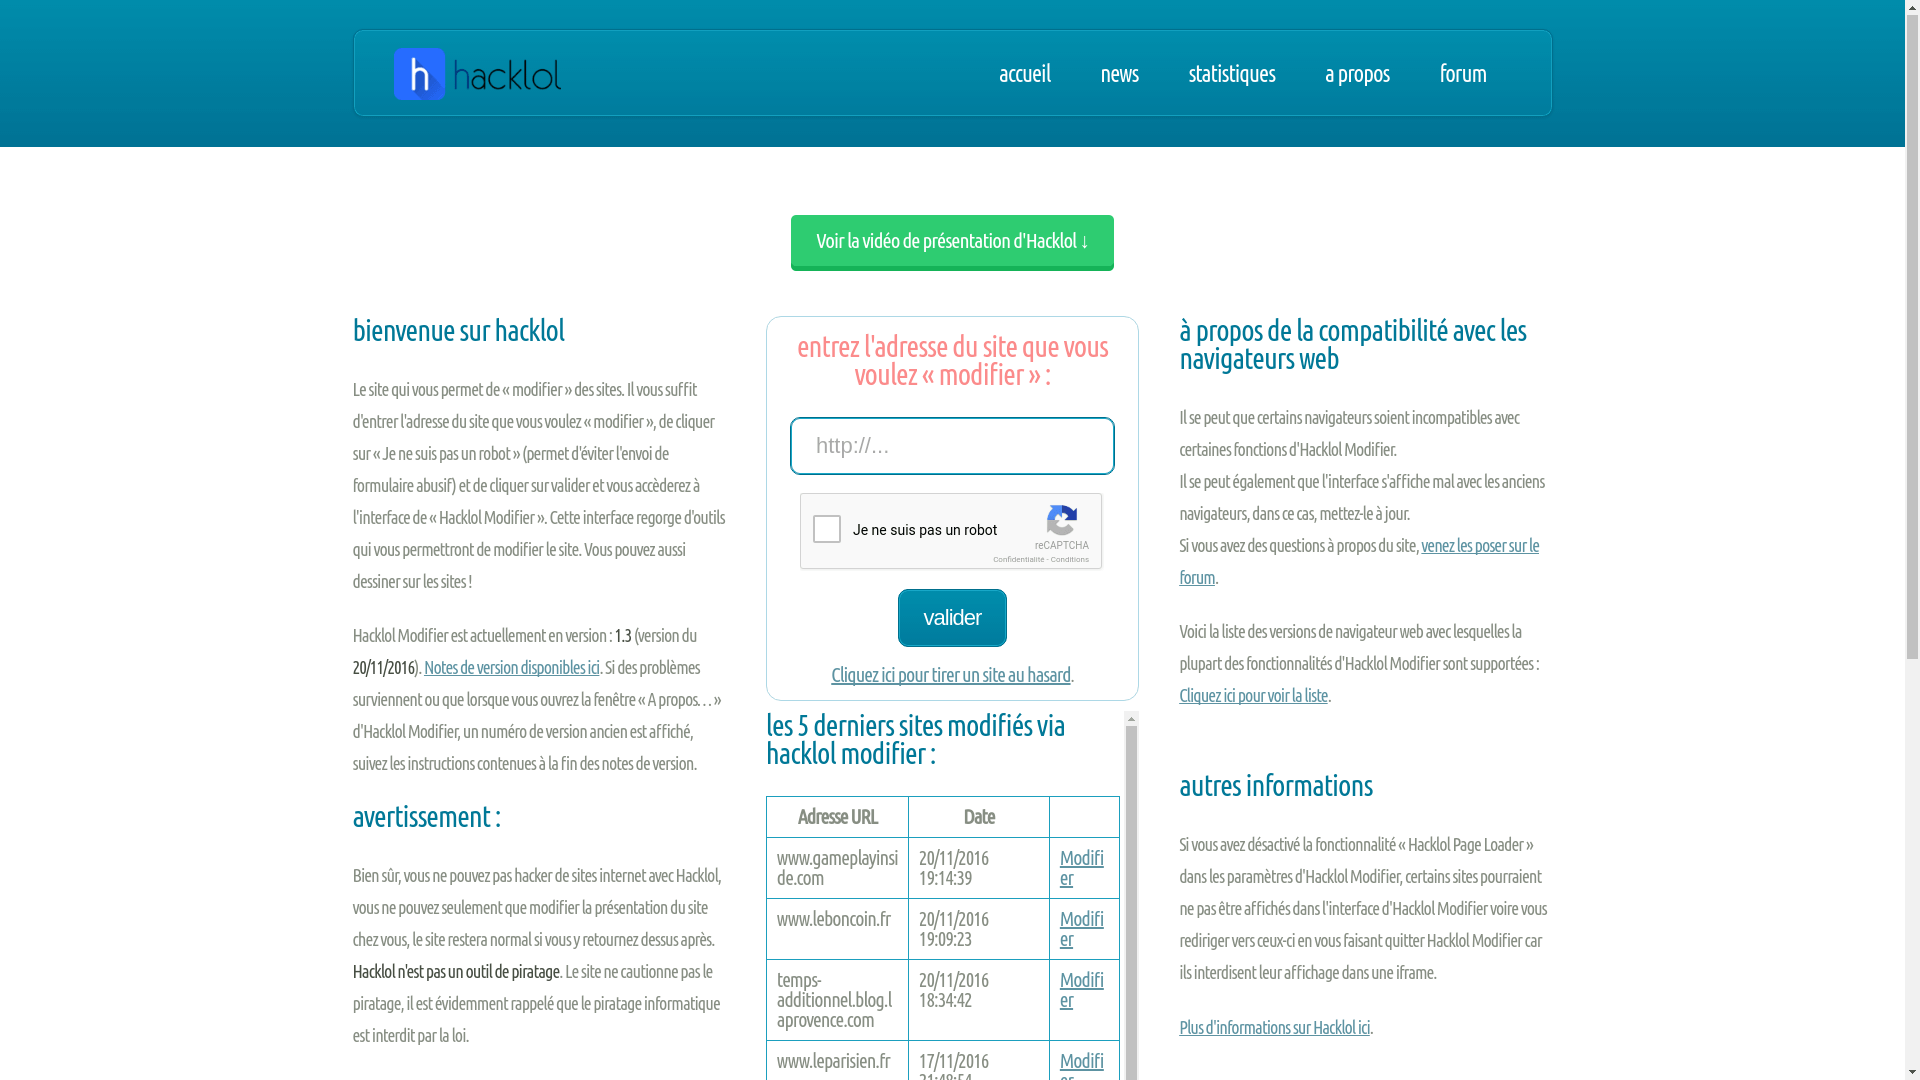 Hacklol homepage (old version)